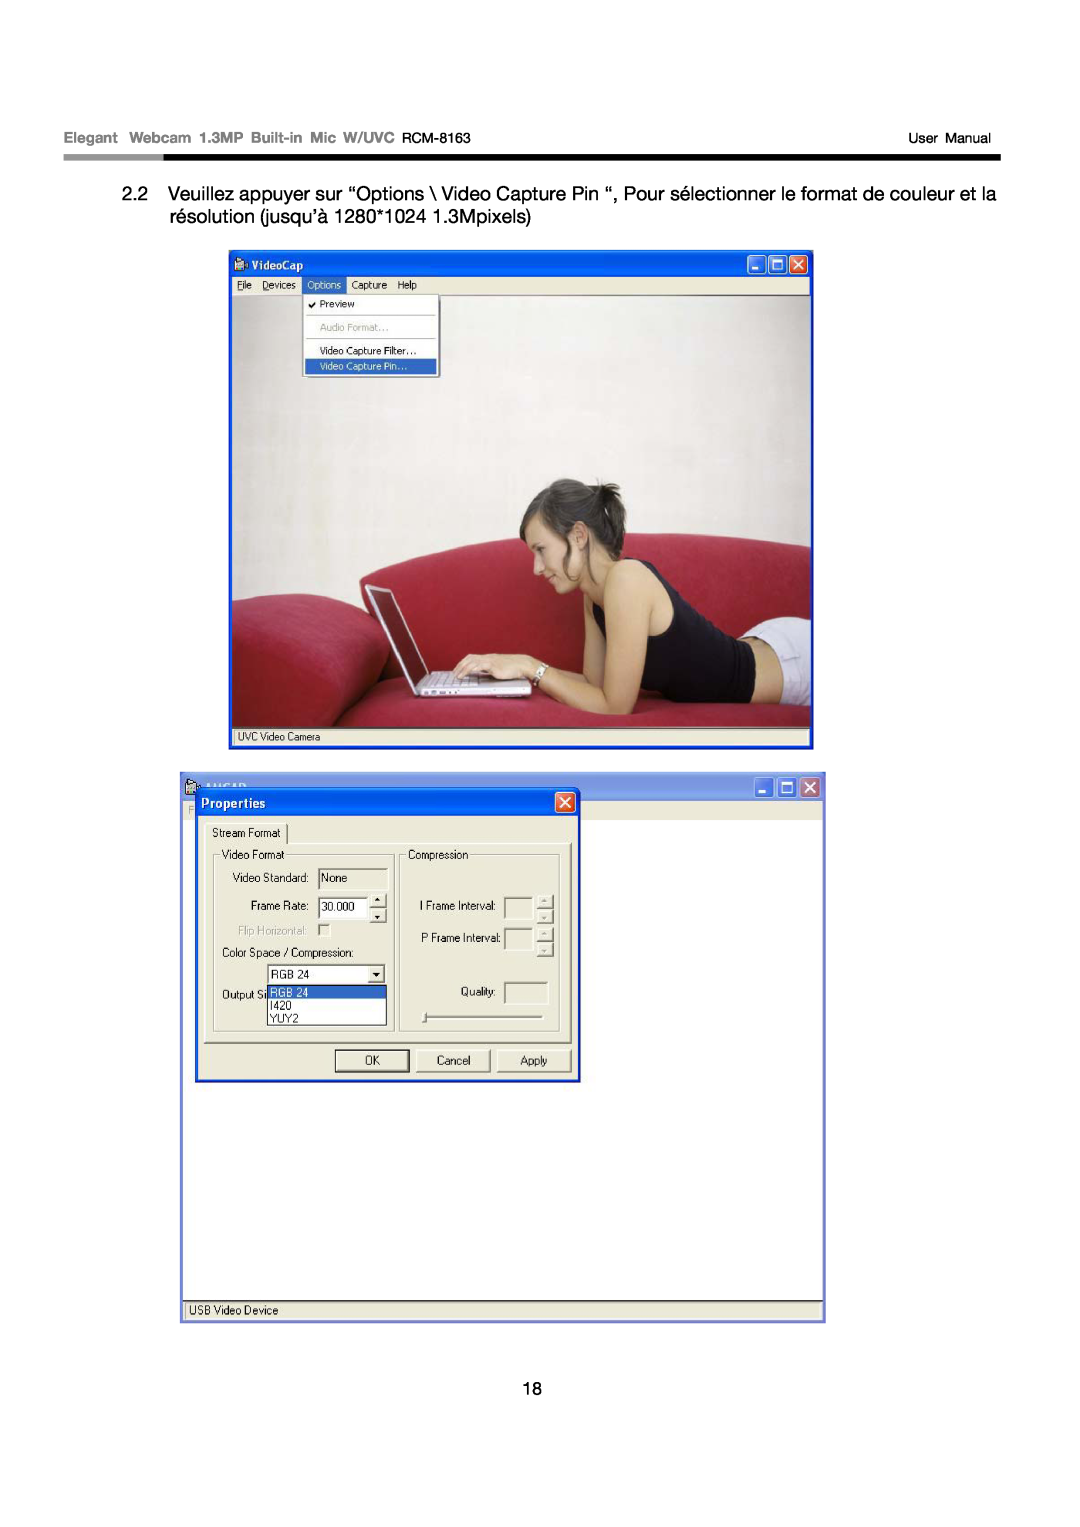 Rosewill user manual Elegant Webcam 1.3MP Built-in Mic W/UVC RCM-8163, User Manual 